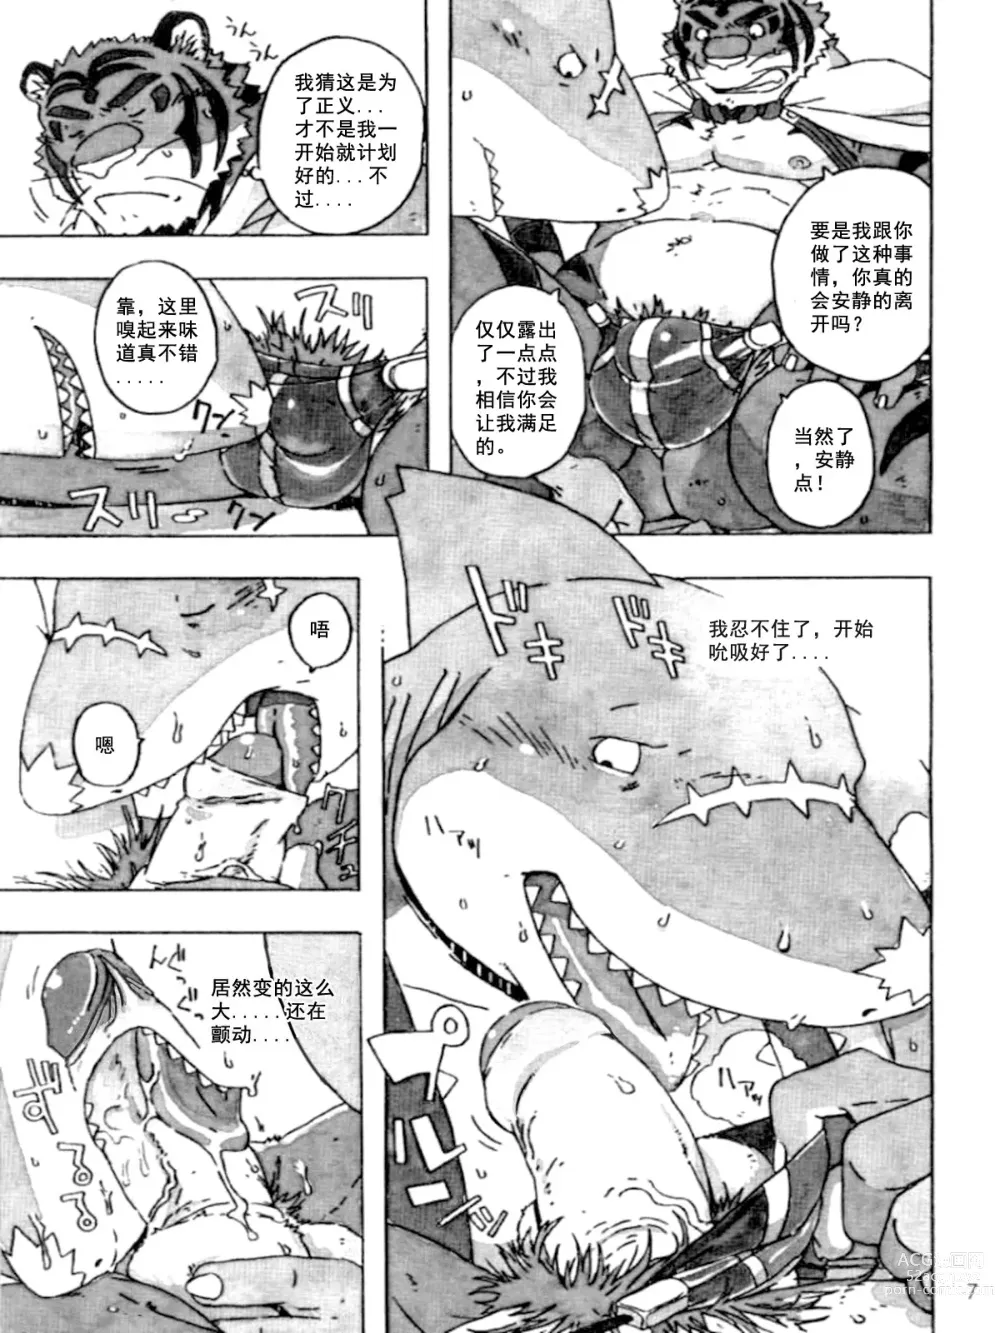 Page 9 of doujinshi Choujuu Gasshin Build Tiger 9